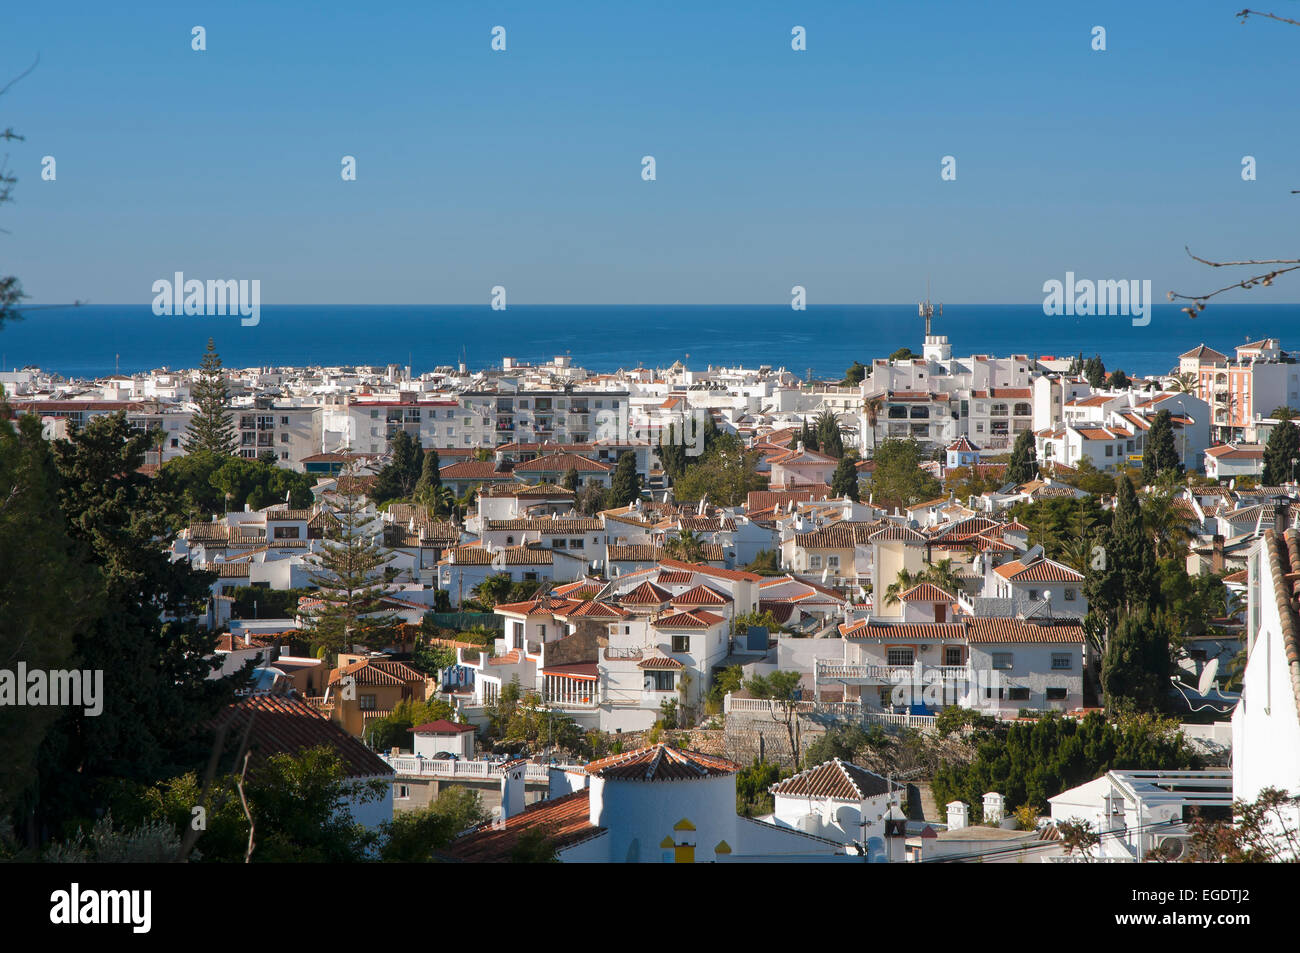 Vue panoramique, Nerja, Malaga province, région d'Andalousie, Espagne, Europe Banque D'Images